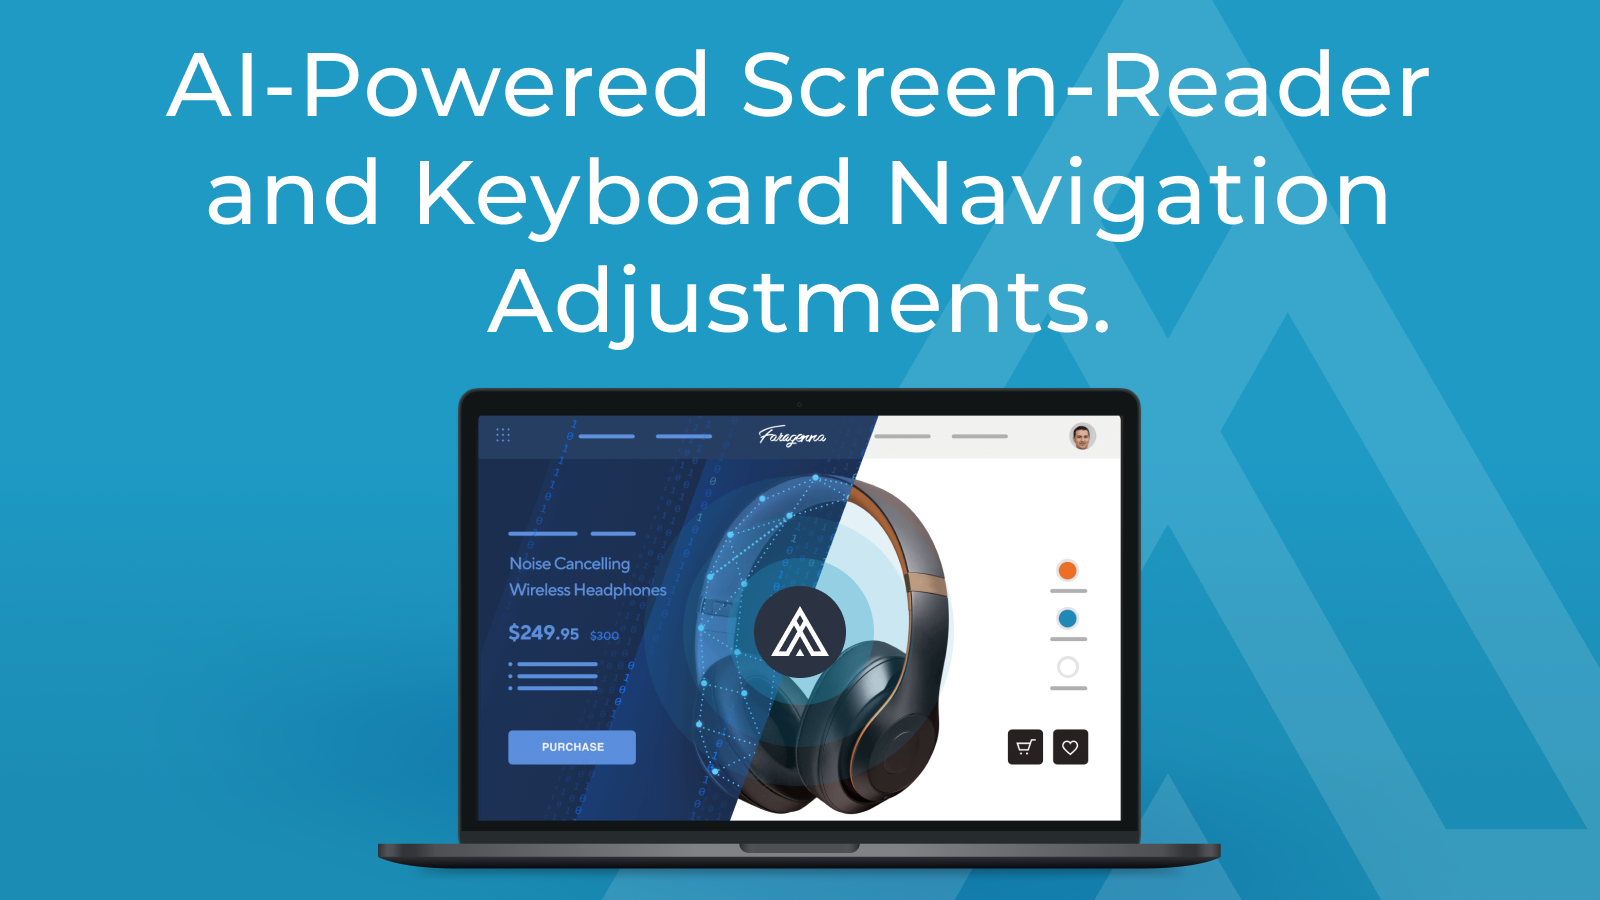 AI-Powered Screen-Reader and Keyboard Navigation Adjustments.